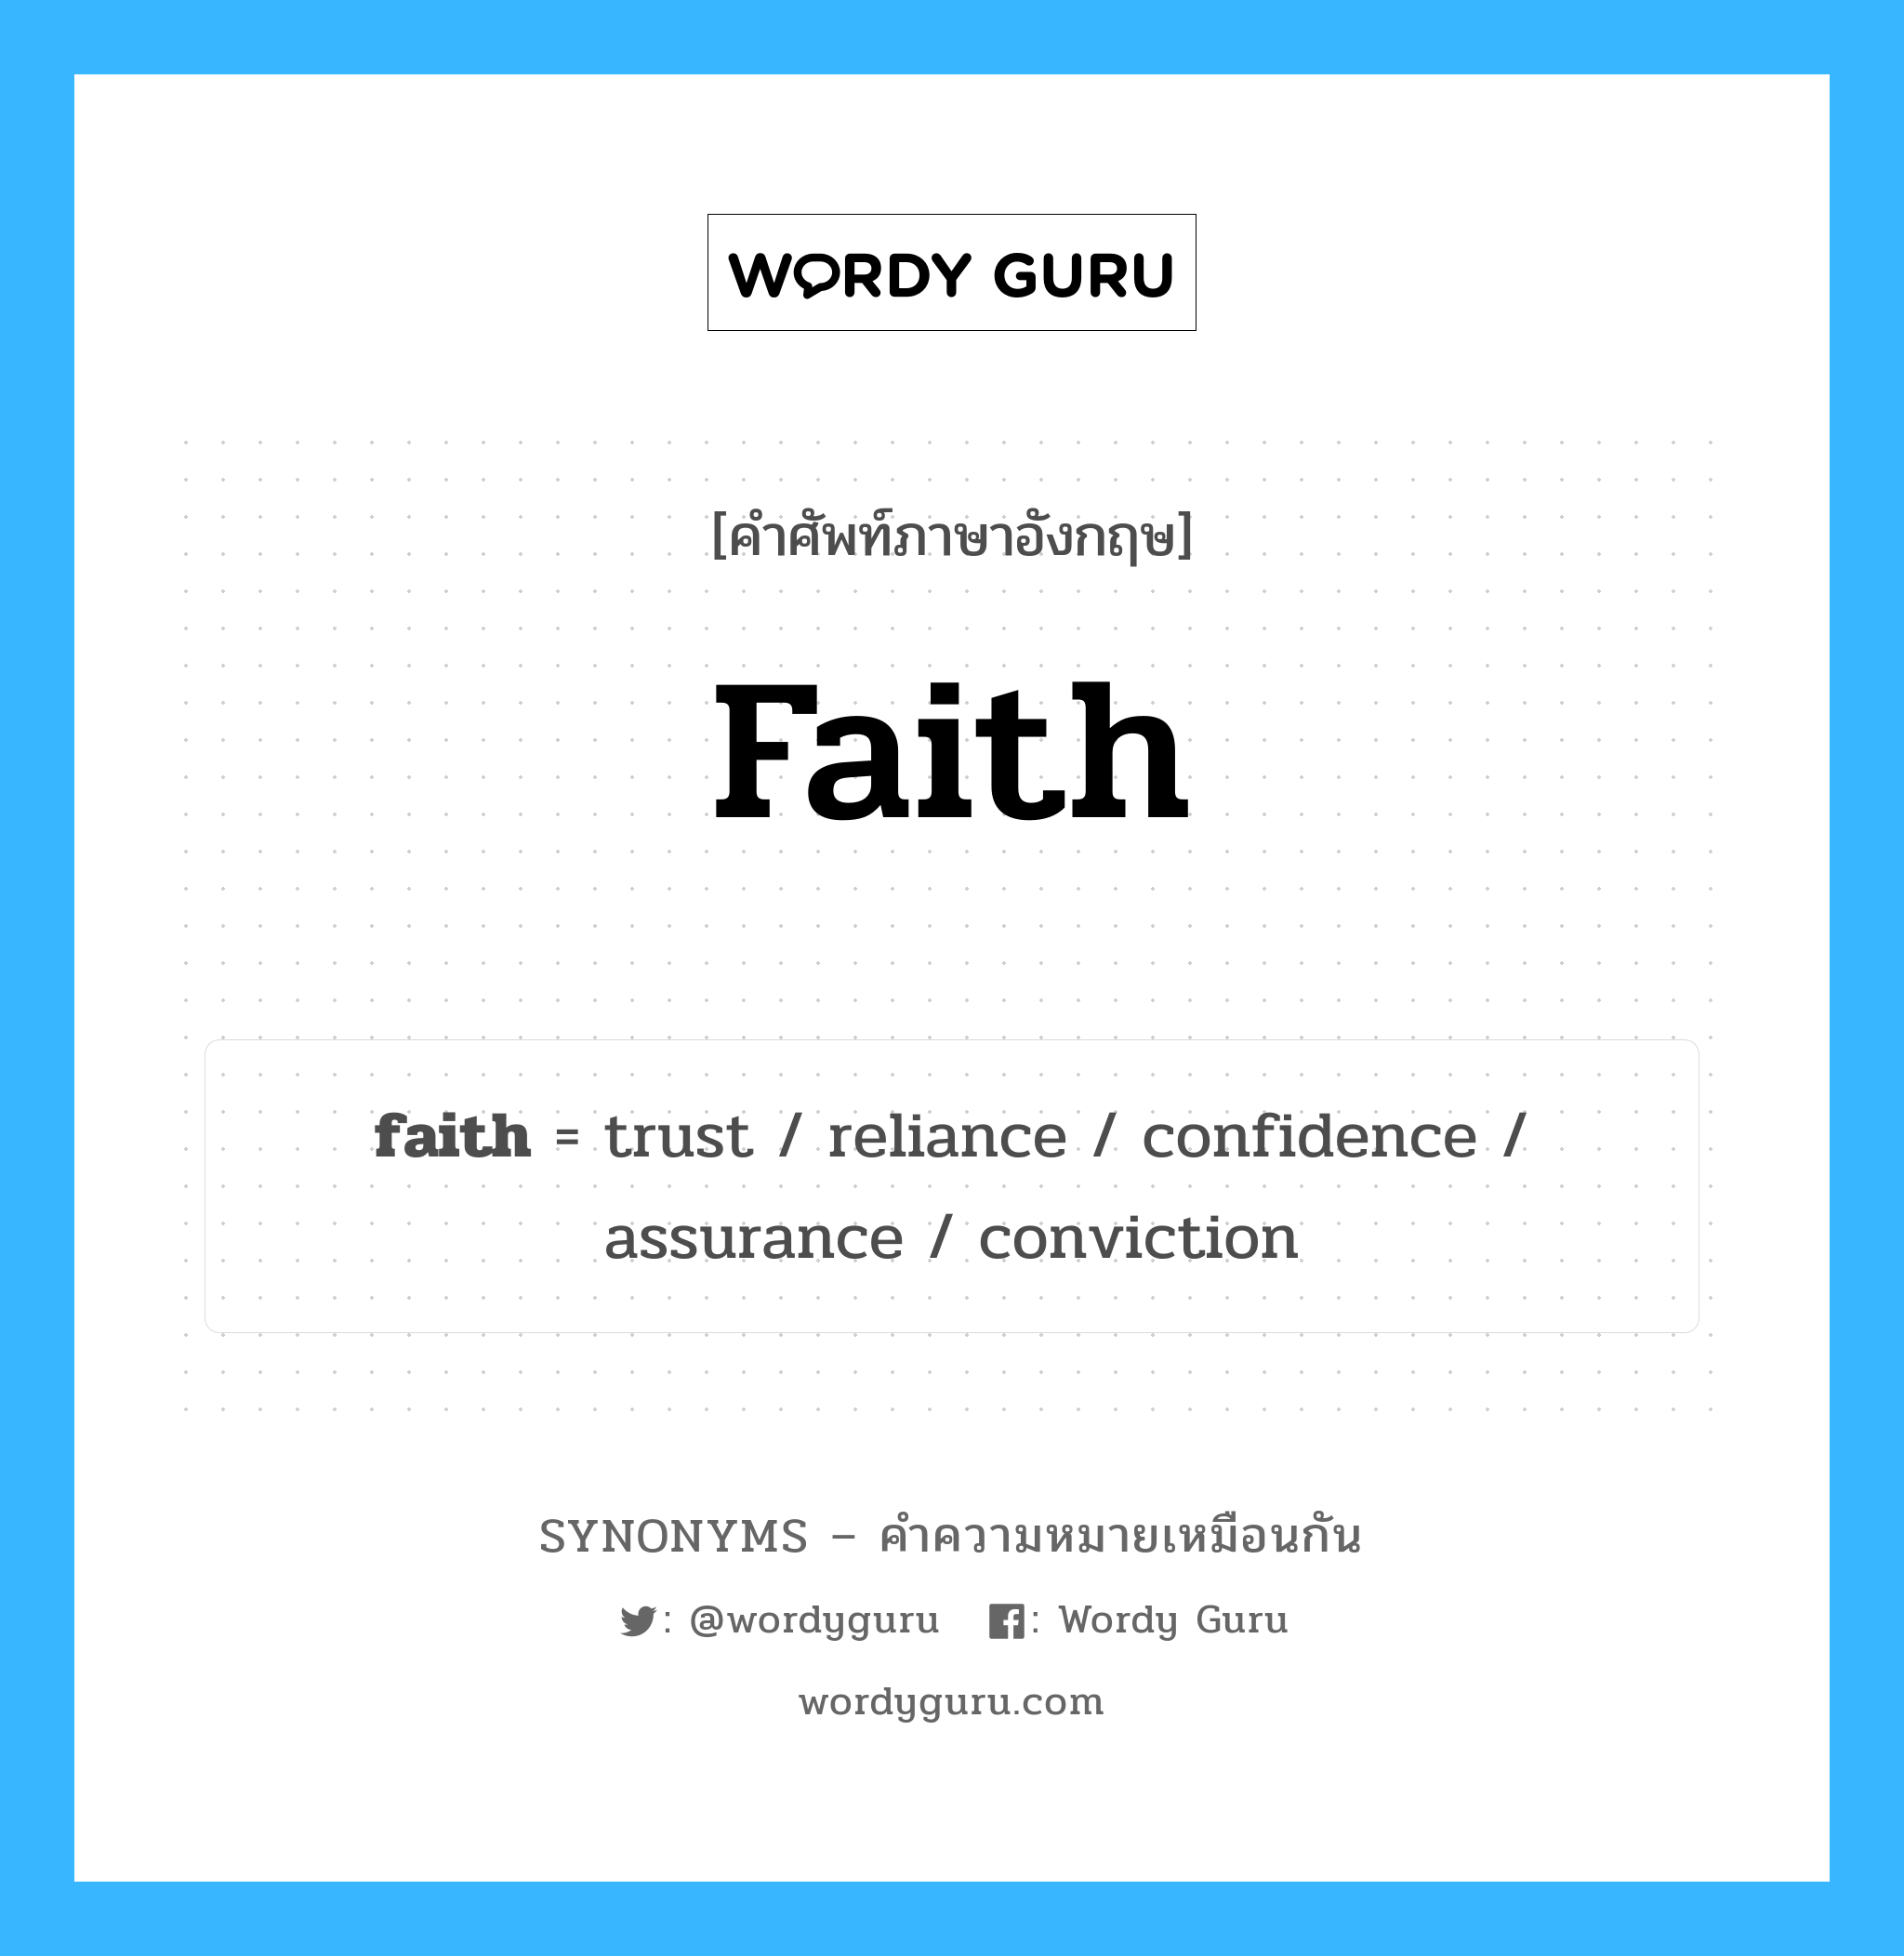 trust เป็นหนึ่งใน faith และมีคำอื่น ๆ อีกดังนี้, คำศัพท์ภาษาอังกฤษ trust ความหมายคล้ายกันกับ faith แปลว่า ความน่าเชื่อถือ หมวด faith